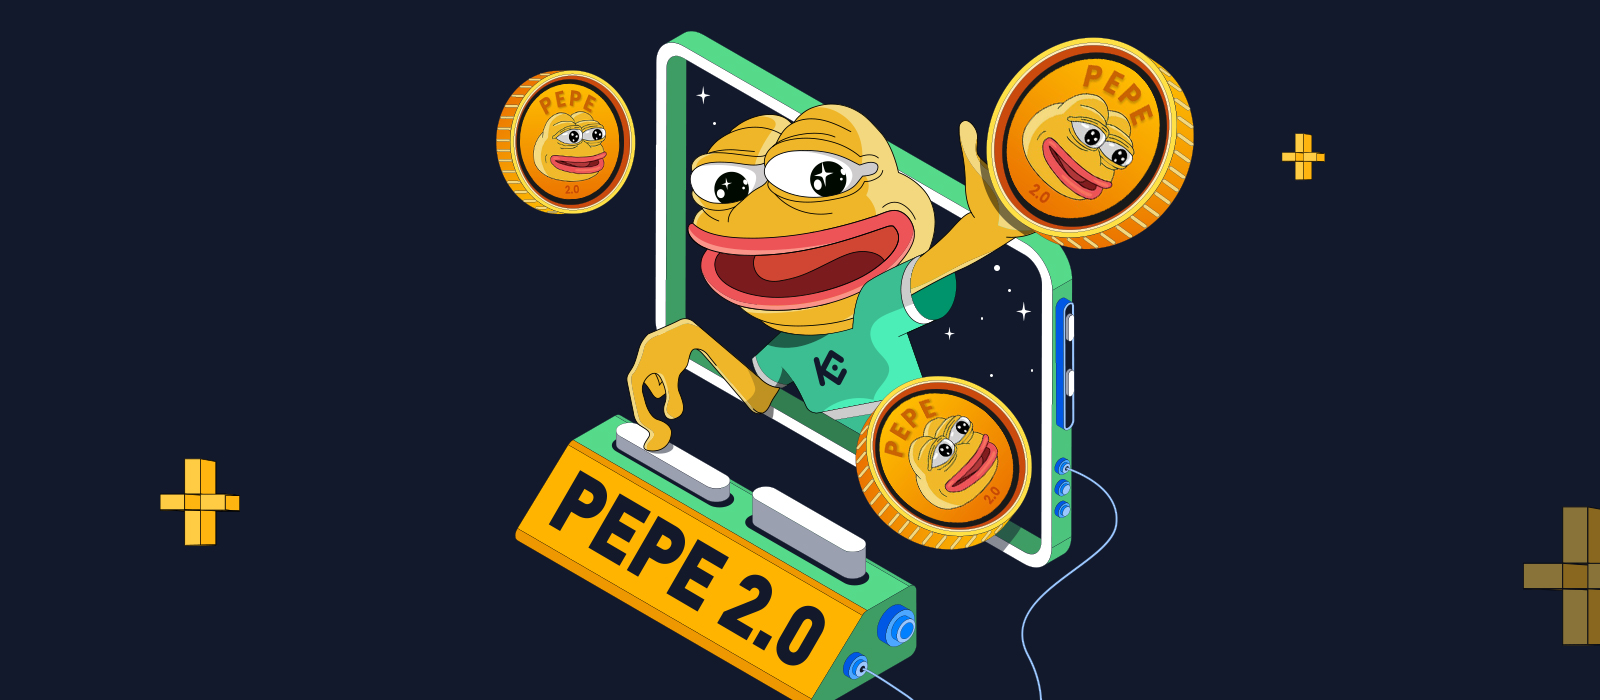 Comprar Pepe 2.0: ¿Es hora de invertir en la nueva Pepe Coin?